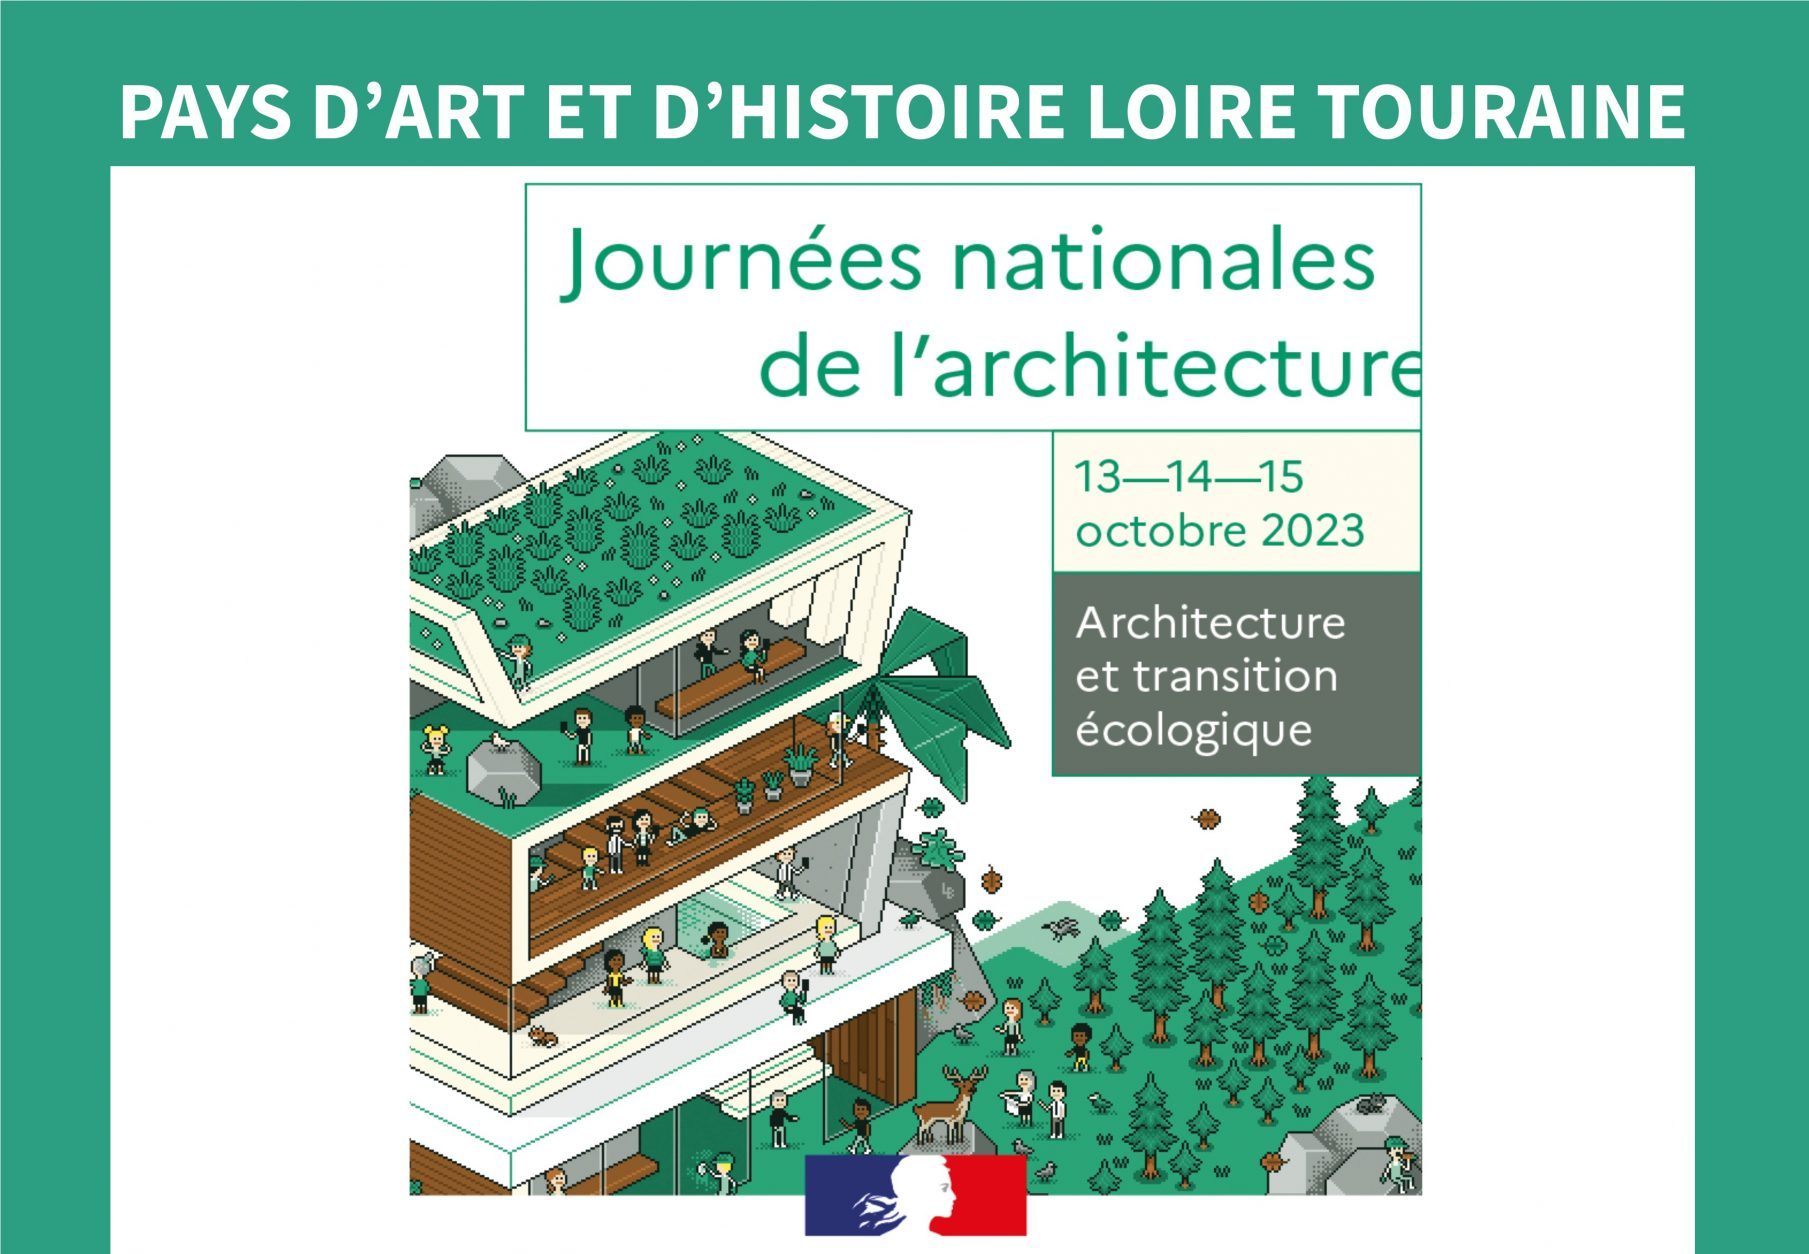 Journées nationales de l'architecture organisées par le Pays loire Touraine